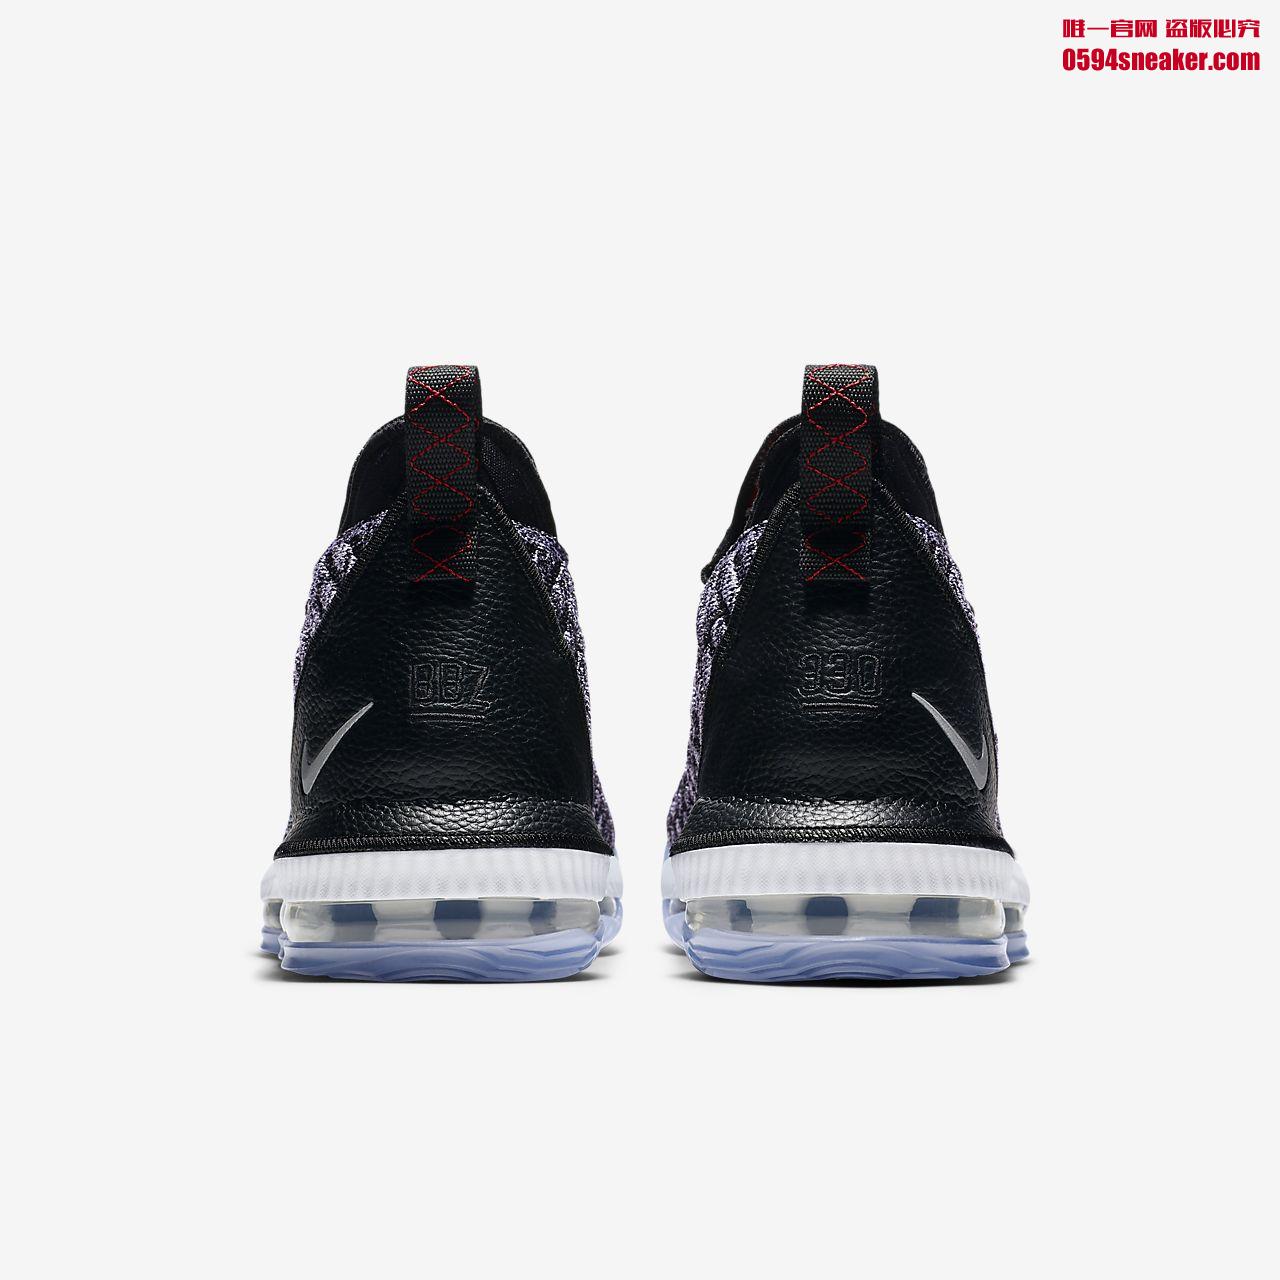 Nike LeBron 16 “Fresh Bred” AO2588-002、“Oreo” AO2595-006